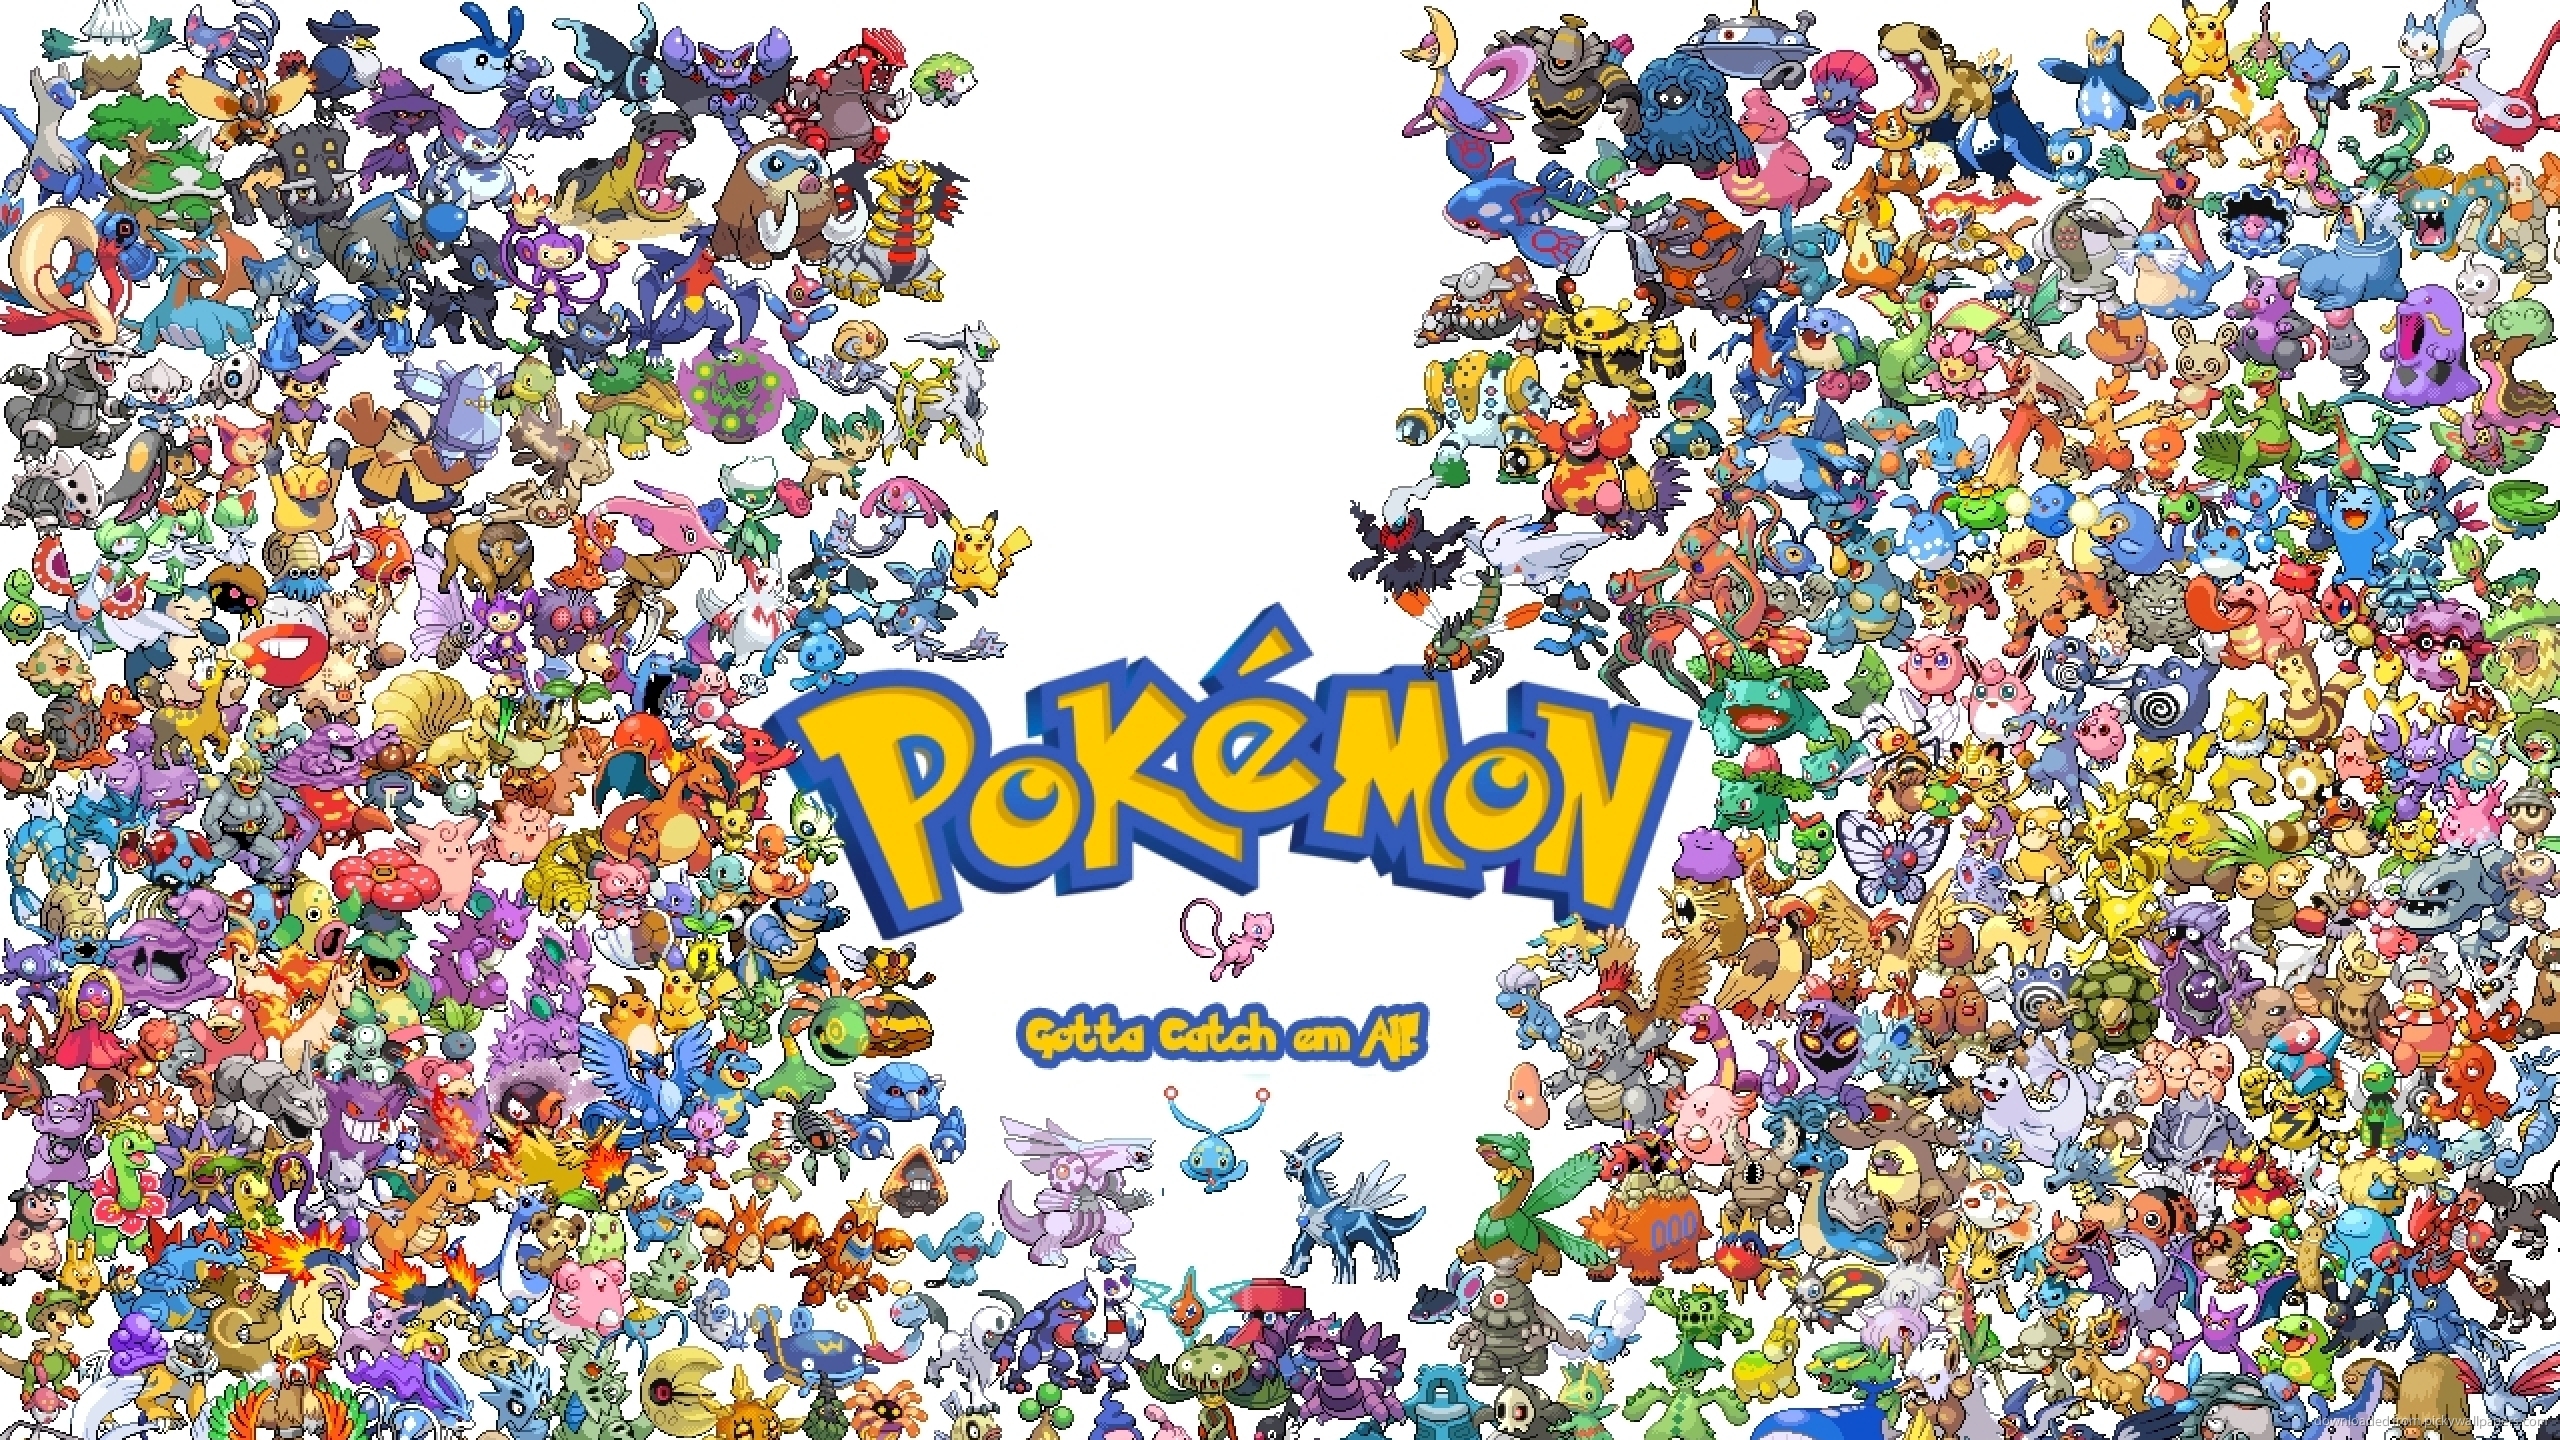 Pokemon wallpaper 2560x1440